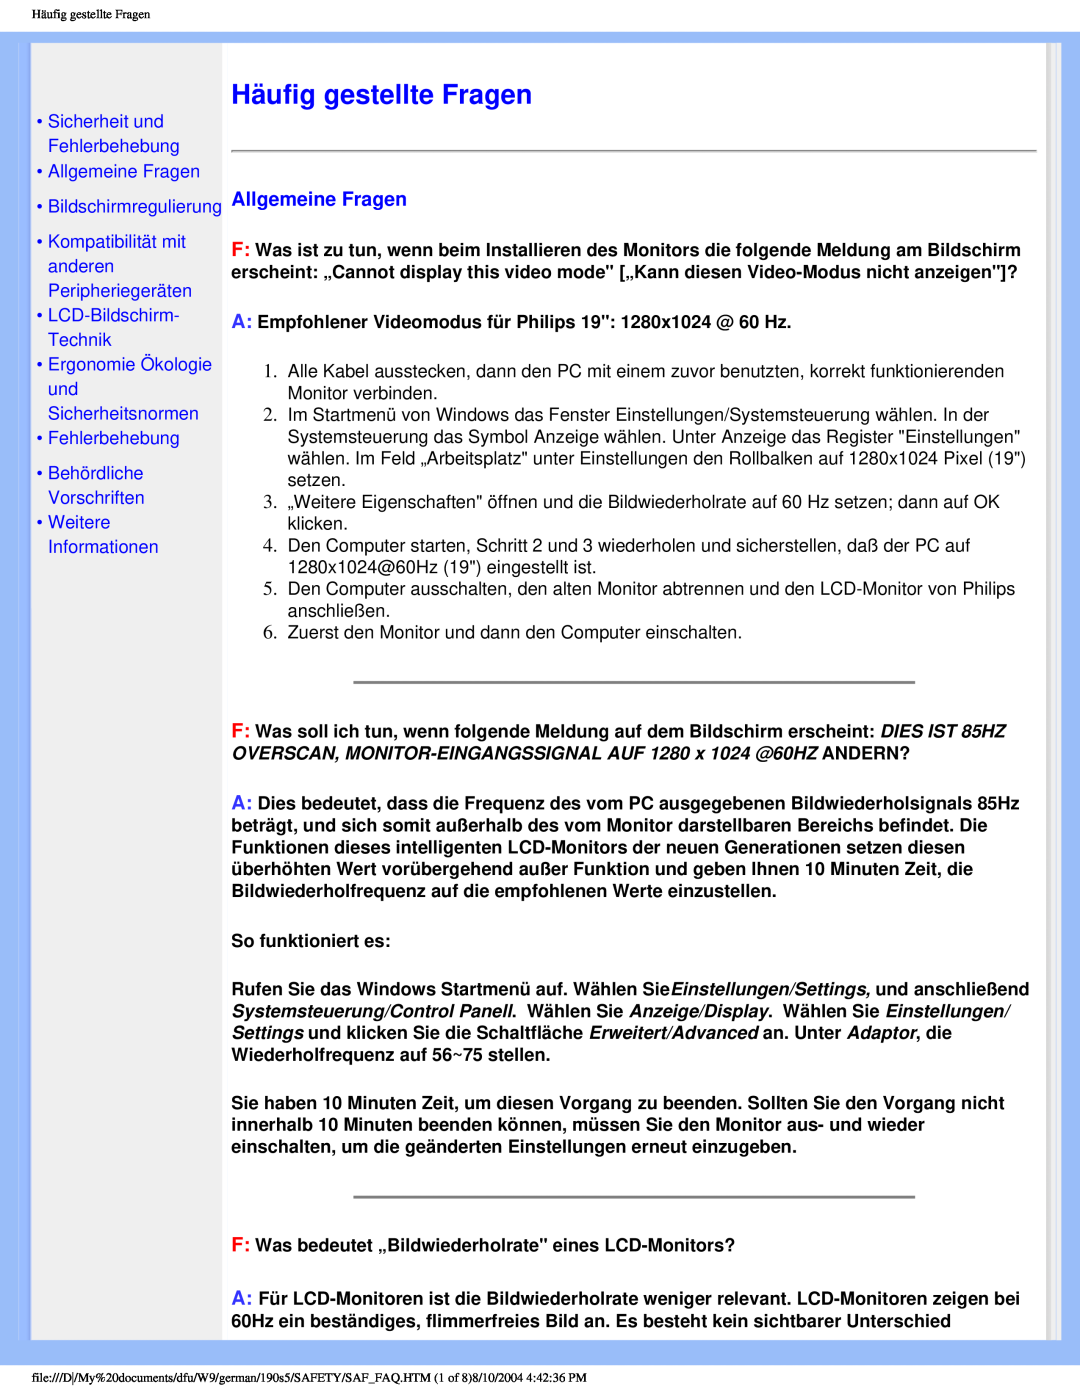 Philips 190S5 user manual Häufig gestellte Fragen, •Allgemeine Fragen •Bildschirmregulierung, •LCD-Bildschirm-Technik 